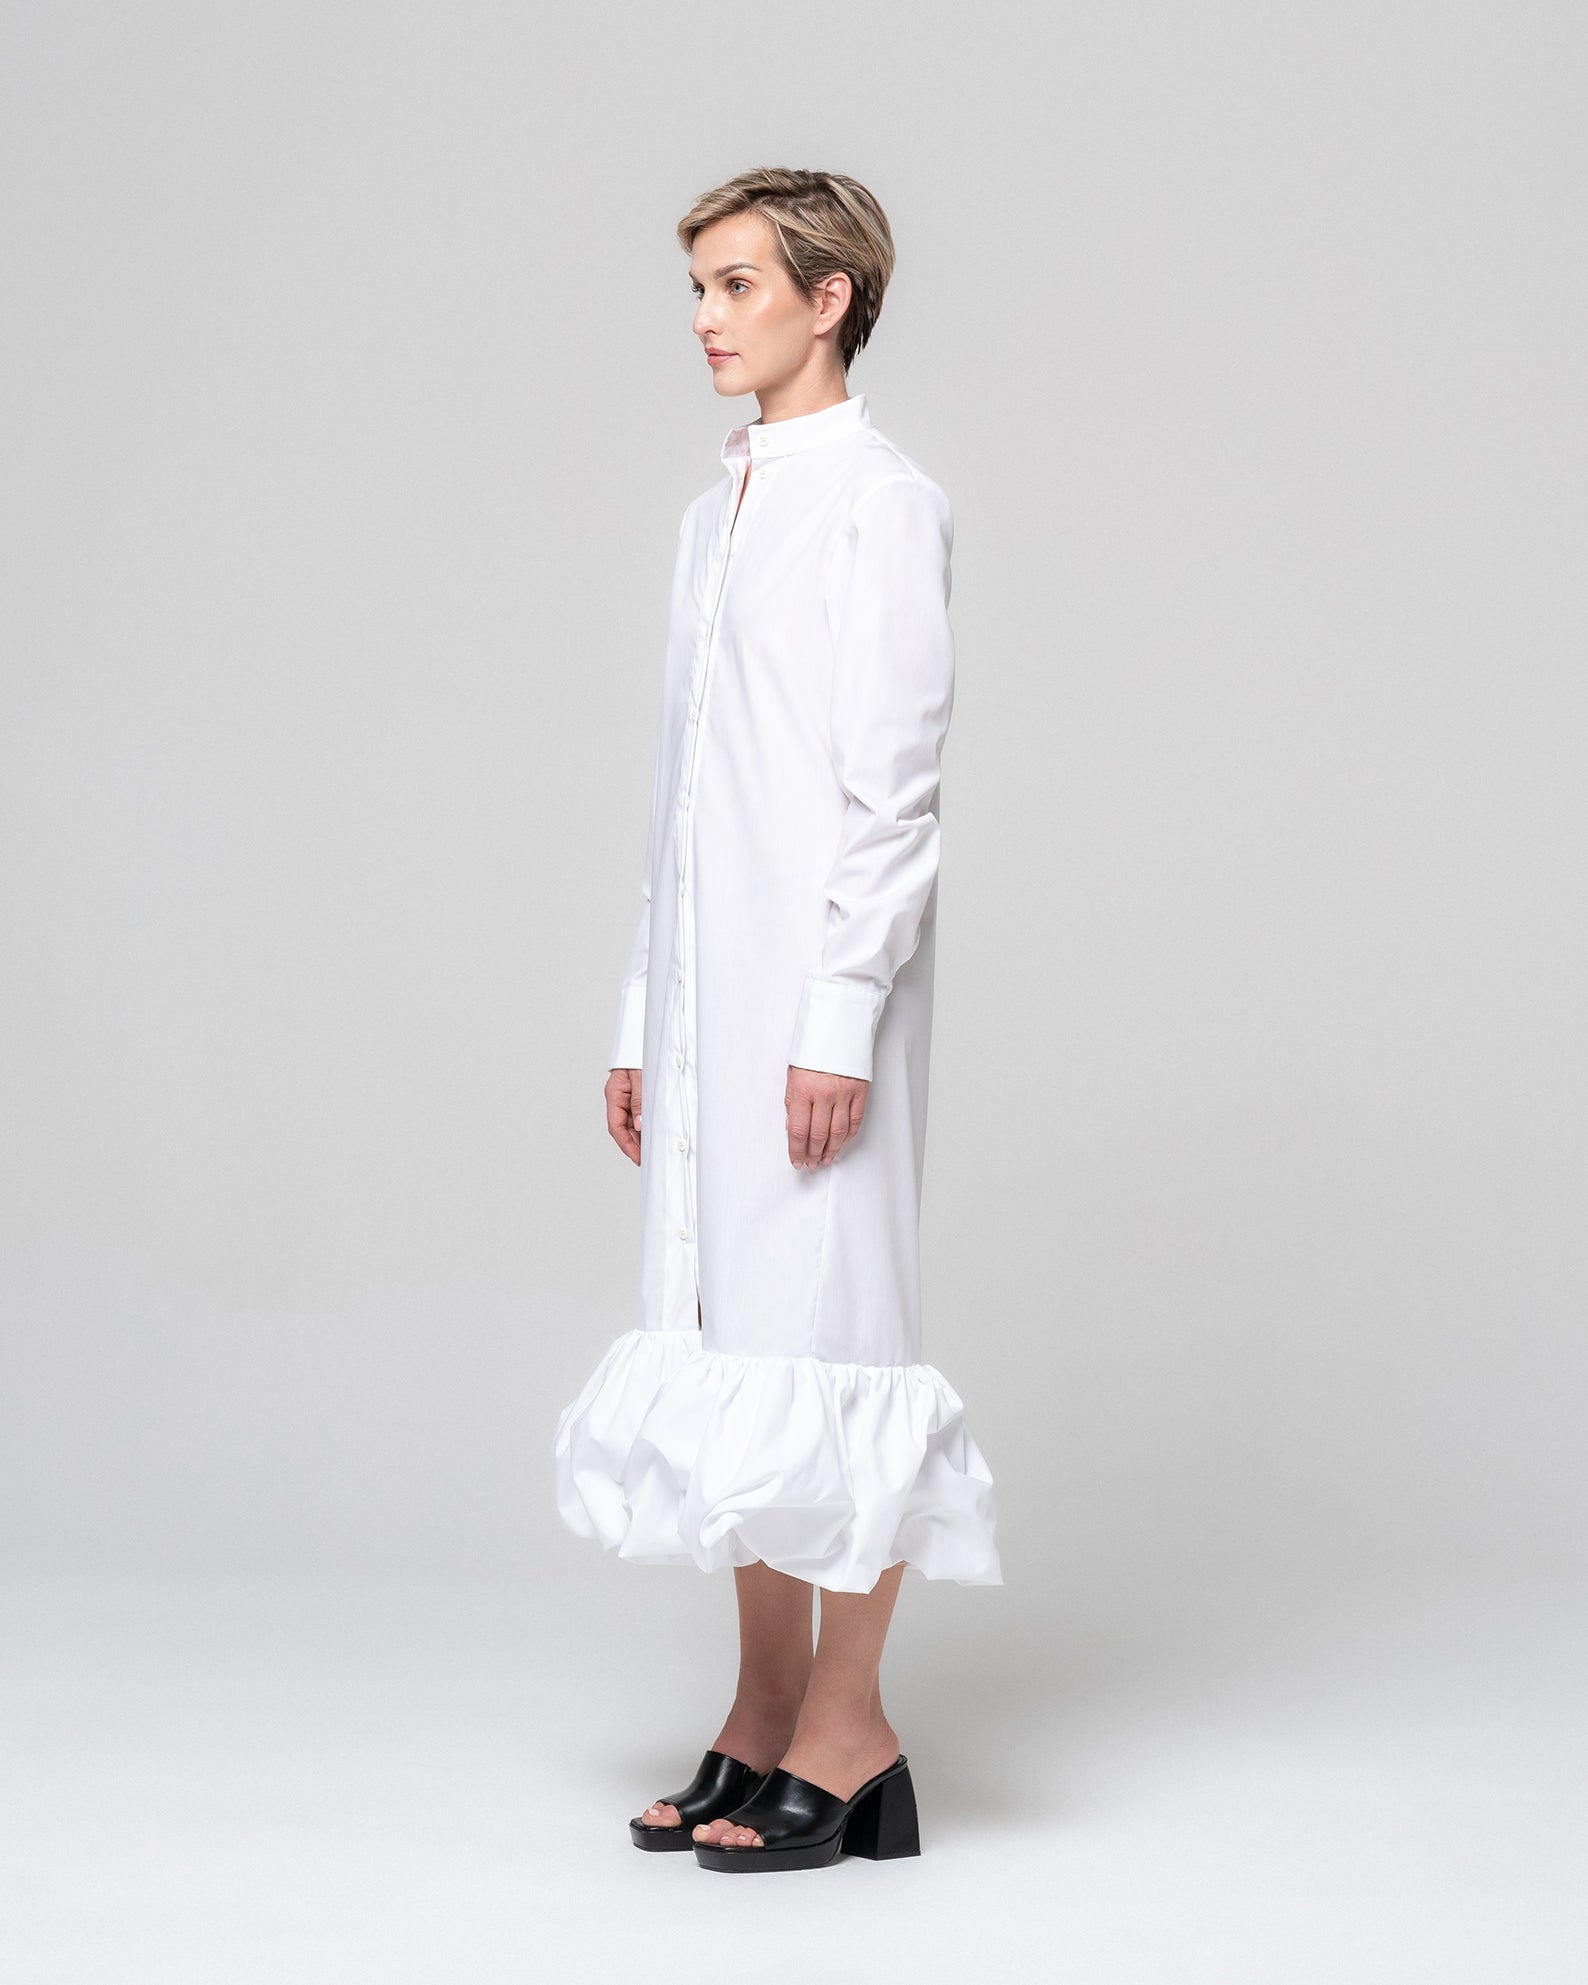 SOLA WHITE SHIRT DRESS - RONI HELOU